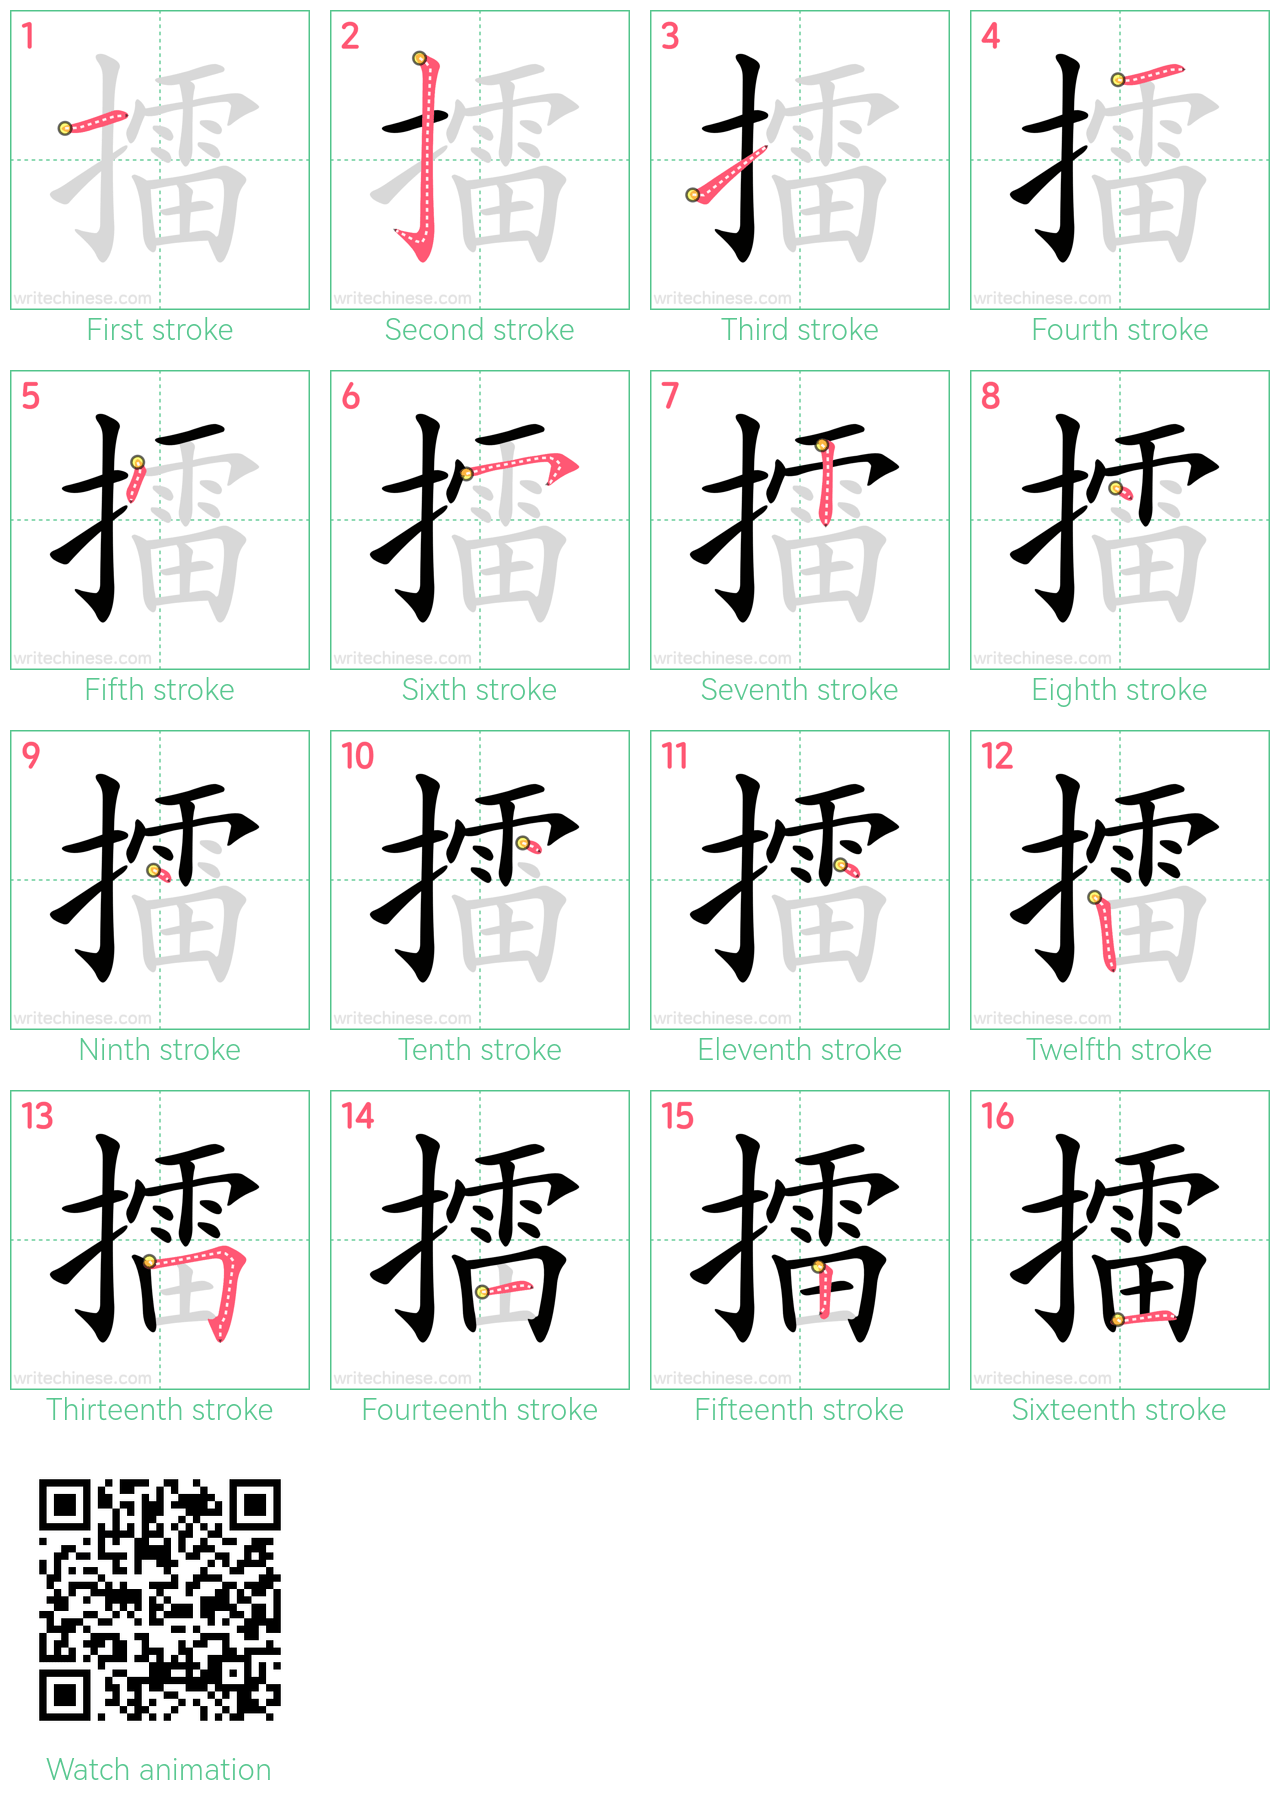 擂 step-by-step stroke order diagrams